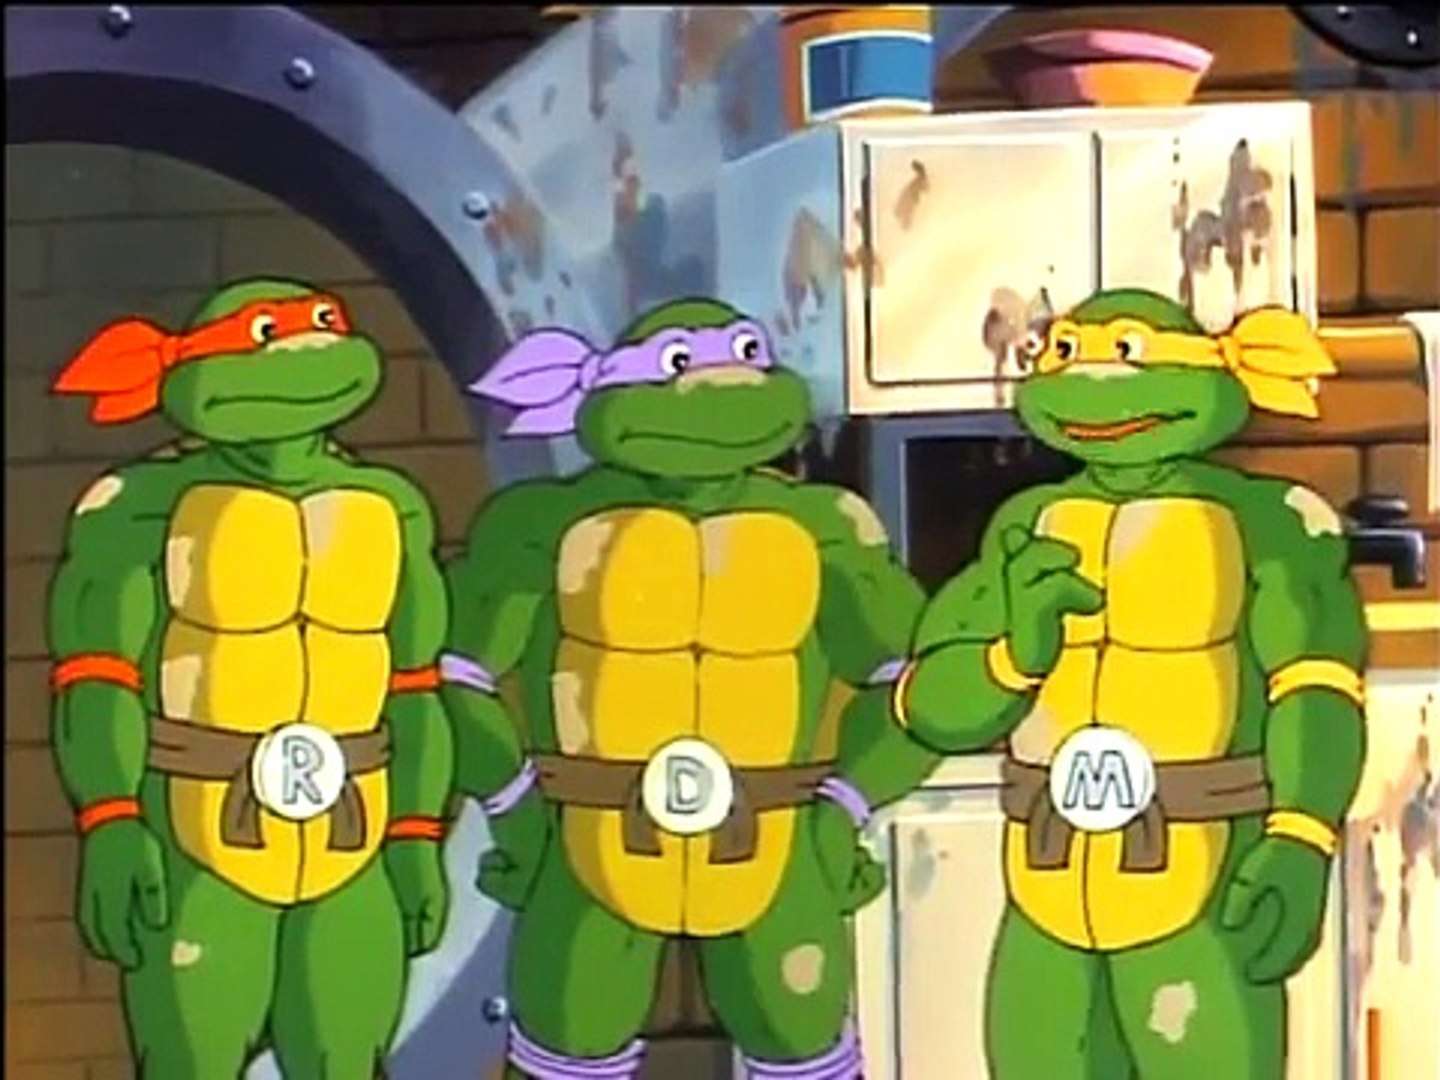 Donatello Makes Time (Season 4, Episode 23)